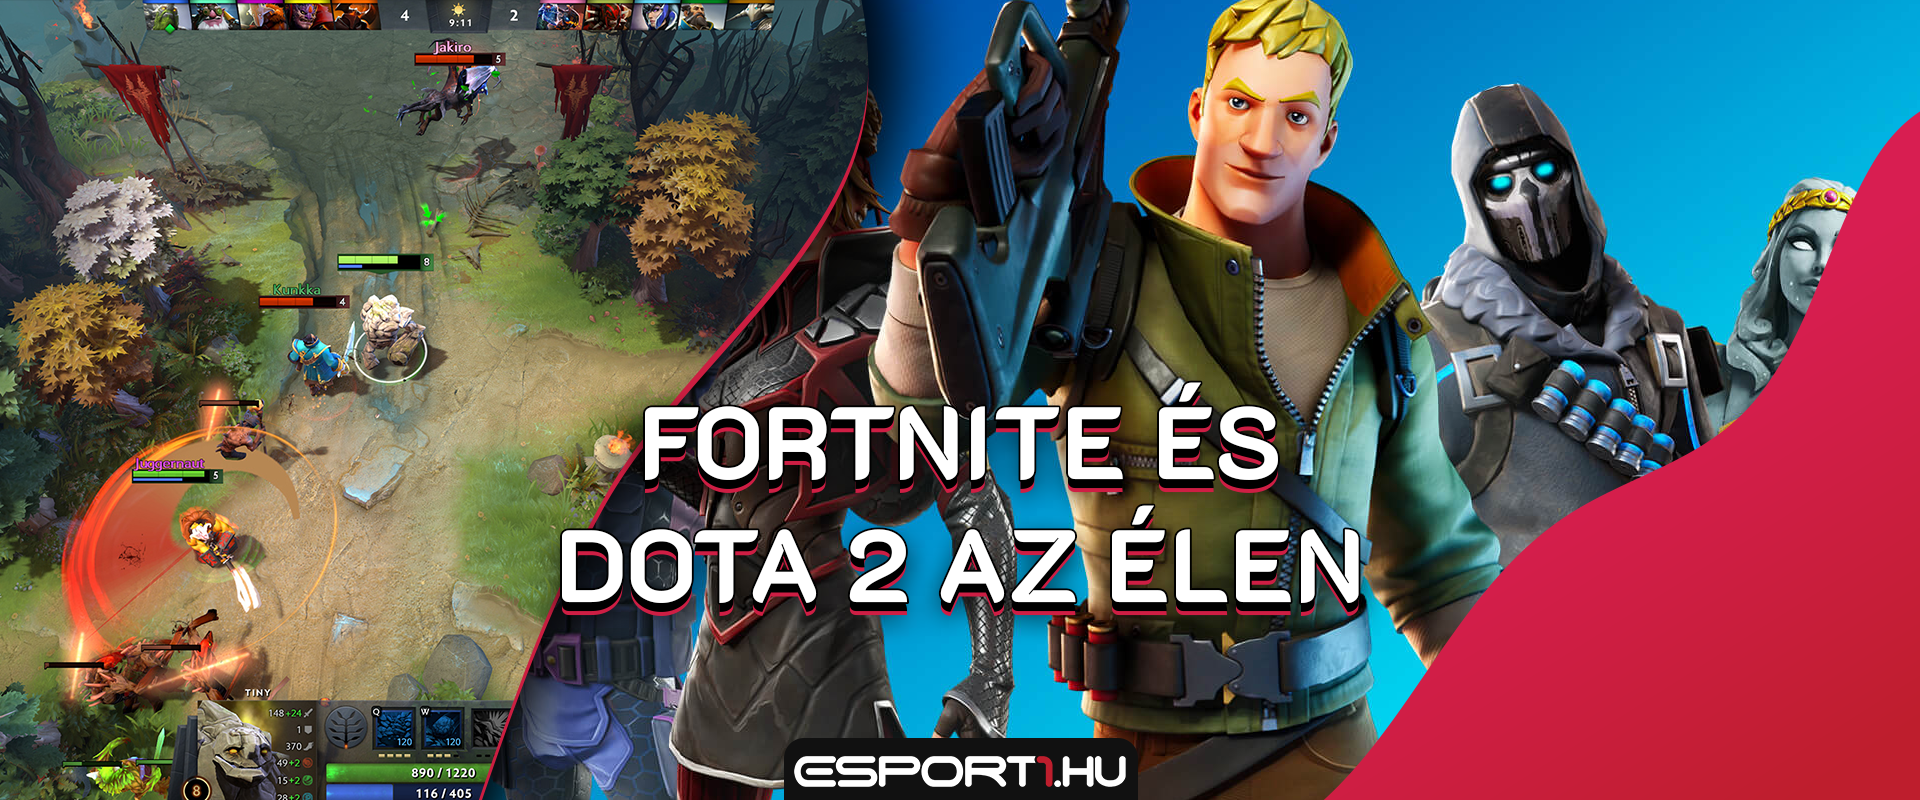 2019-ben a Fortnite és a Dota 2 volt az e-sportjátékok két királya